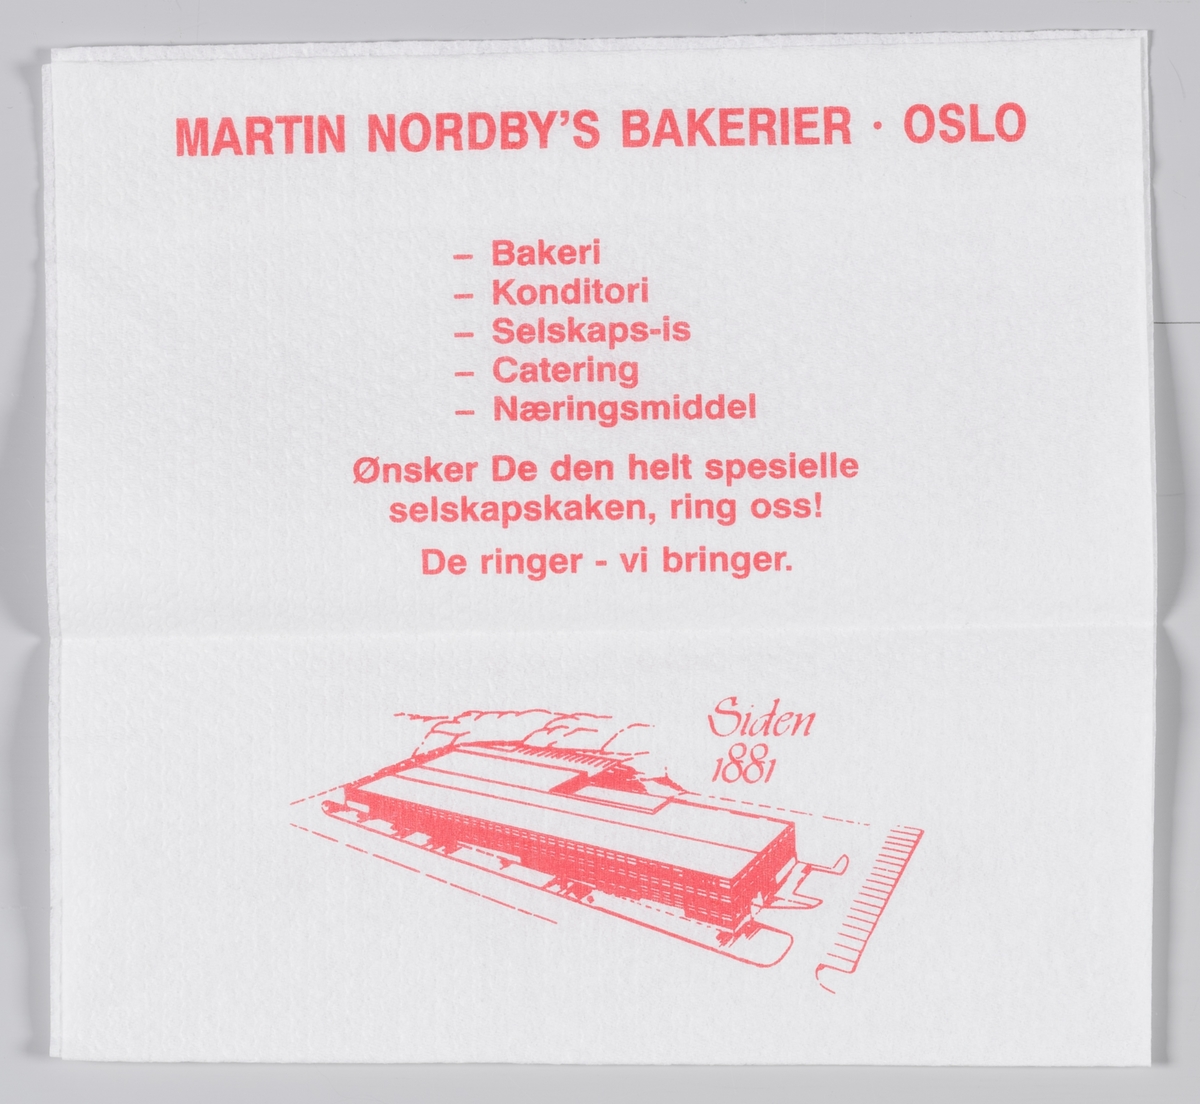 En gutt med kokkehatt og en reklametekst for Baker Martin Nordby i Oslo.

Martin Nordby åpnet sitt bakeri på Tøyen i Oslo 1881. Martin Nordby er i dag en avdeling av Bakehuset Møllhausen.

Samme reklametekst på MIA.00007-004-0249 til MIA.00007-004-0252.